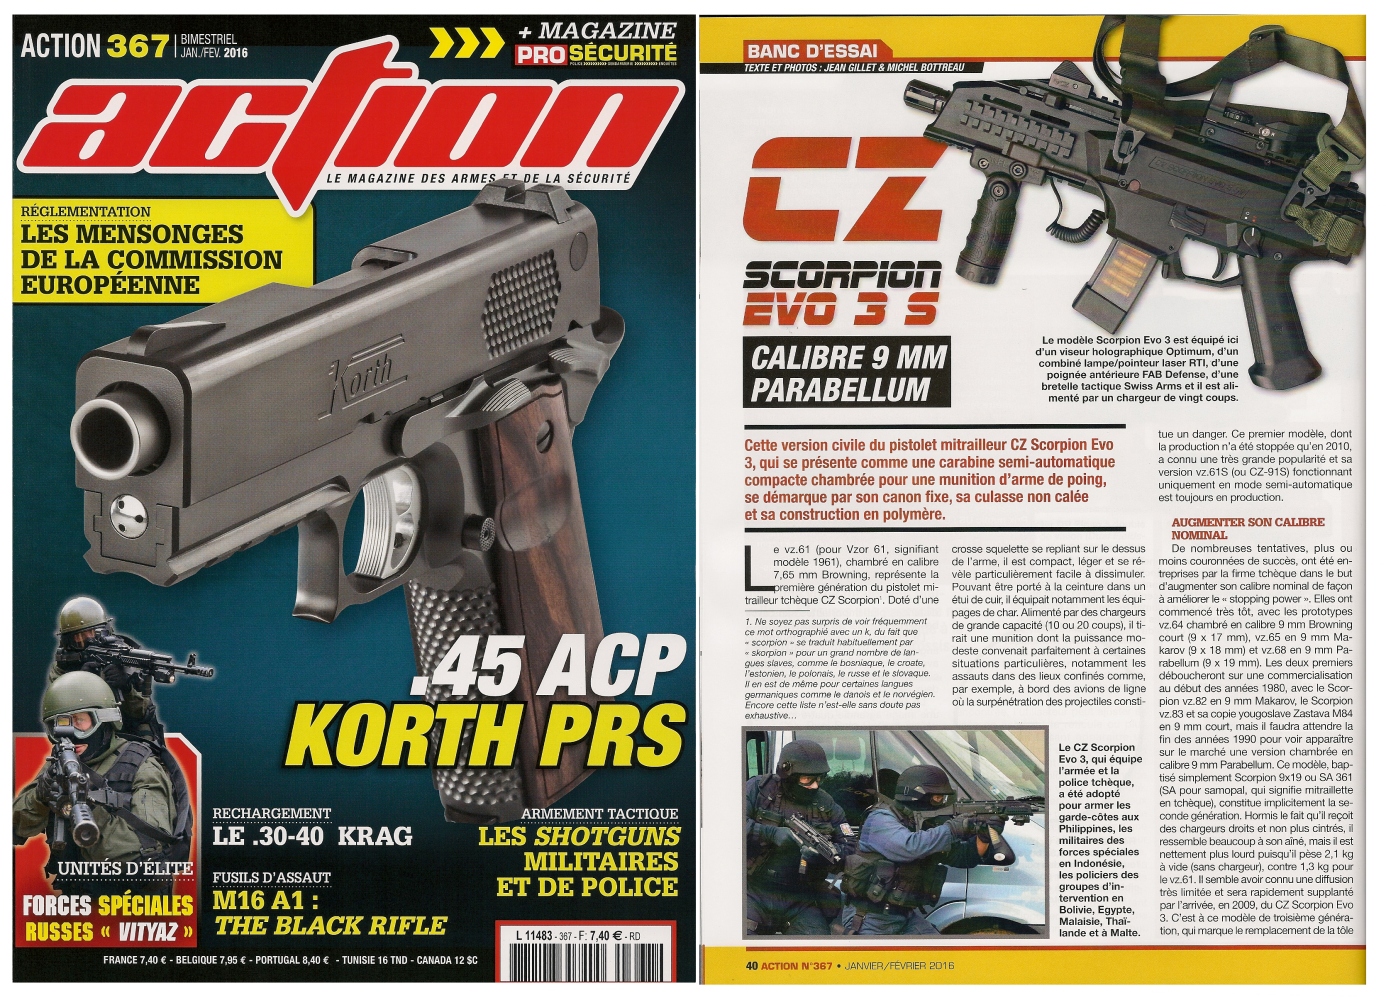 Le banc d'essai de la carabine CZ Scorpion Evo 3 S a été publié sur 6 pages dans le magazine Action n°367 (janvier-février 2016).